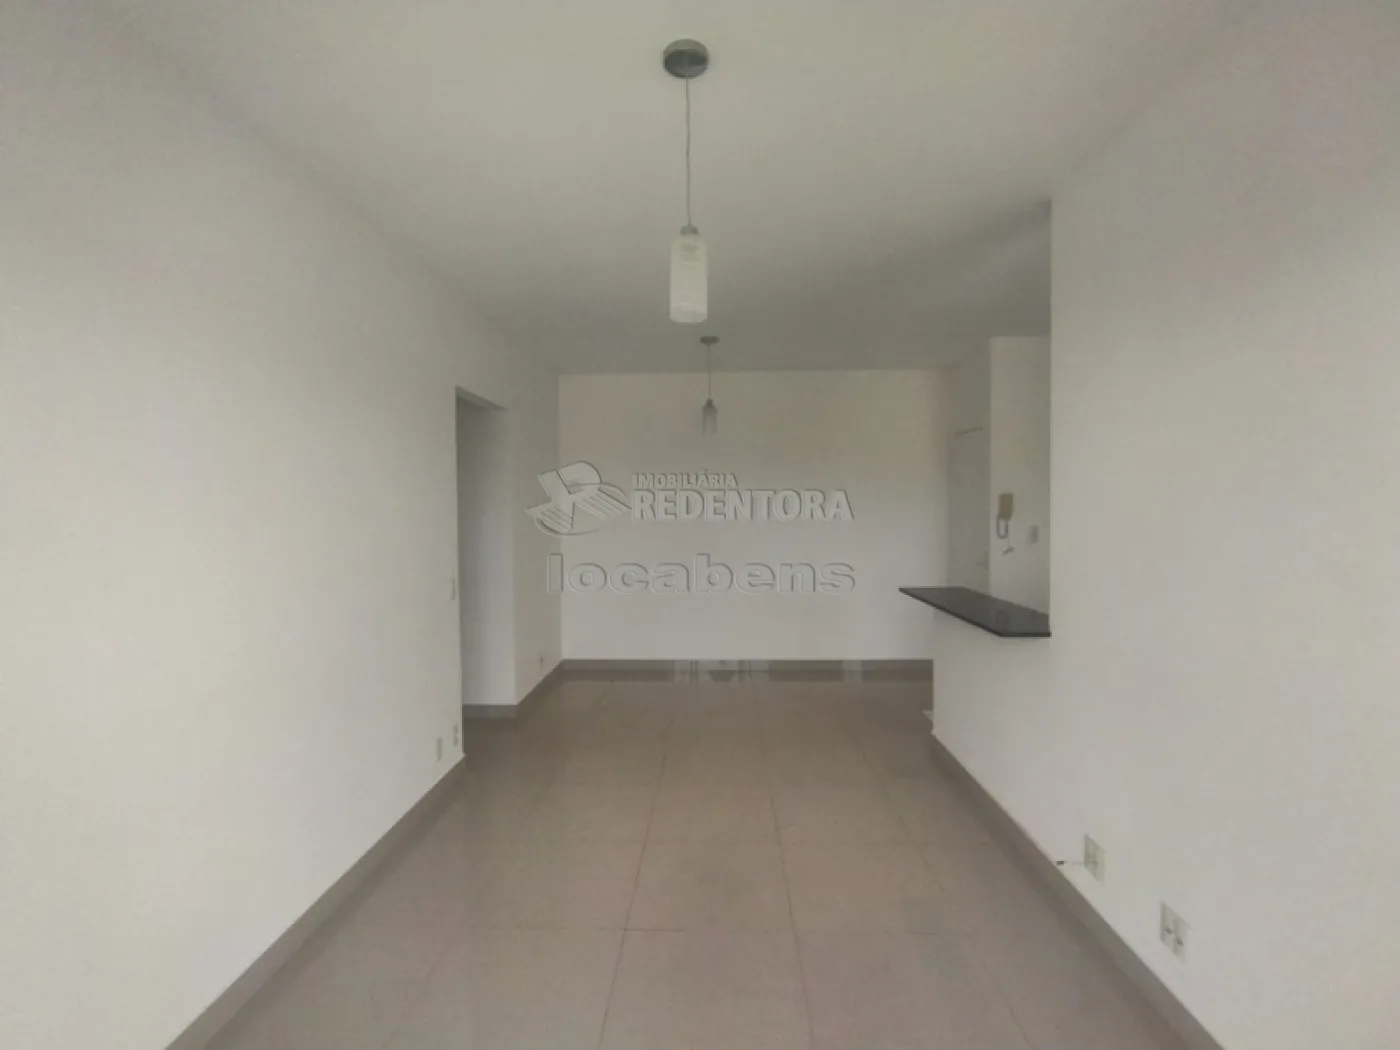 Alugar Apartamento / Padrão em São José do Rio Preto apenas R$ 1.700,00 - Foto 6